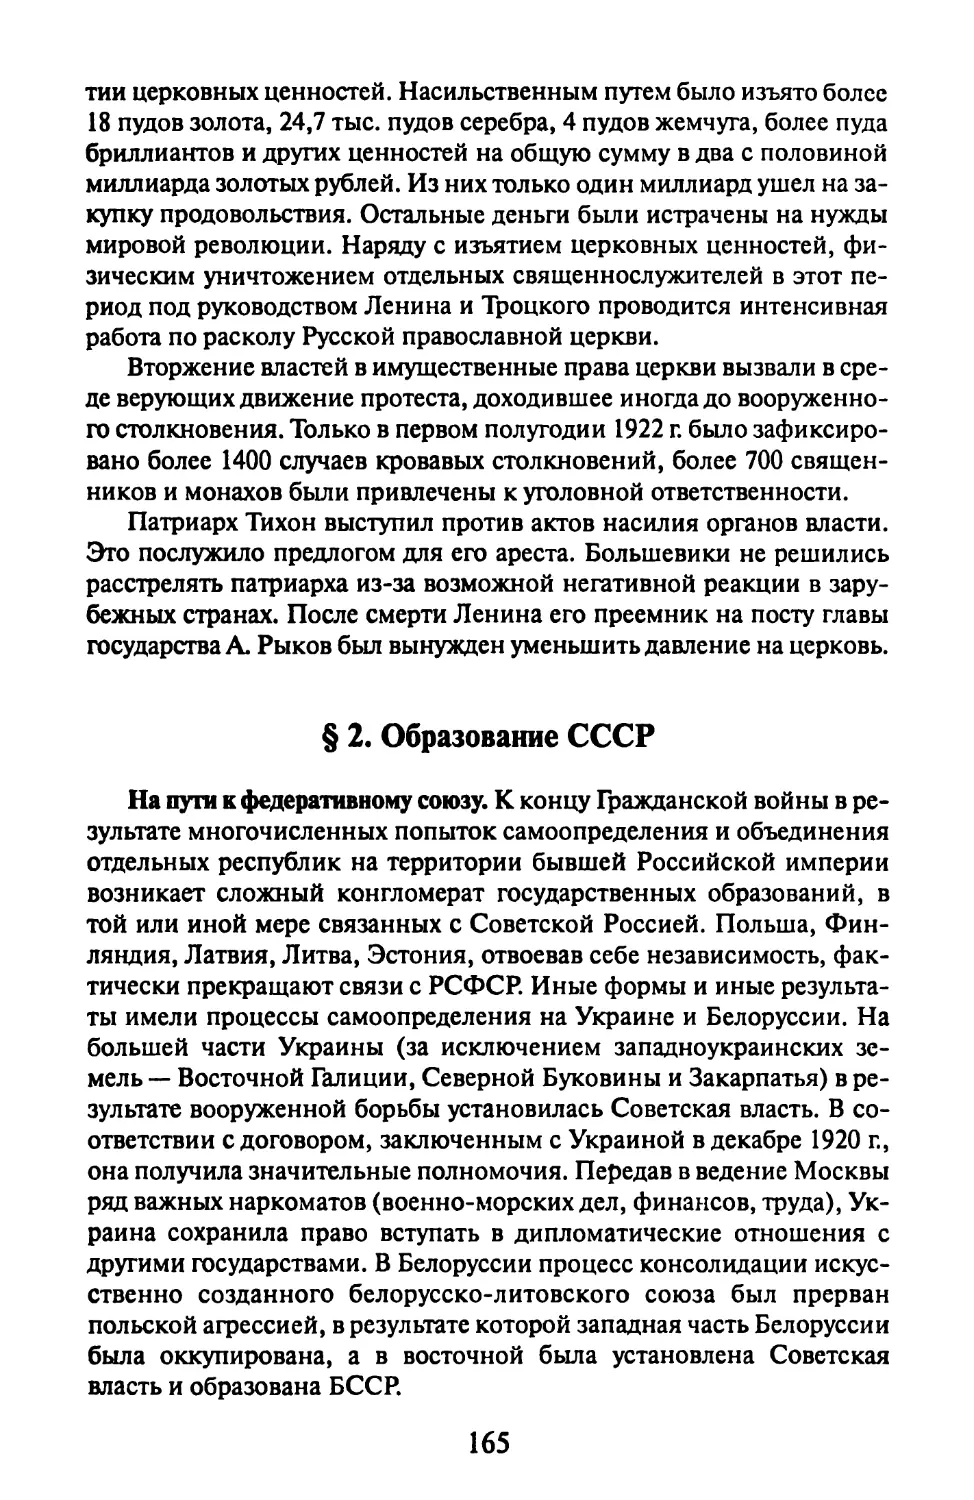 §2. Образование СССР